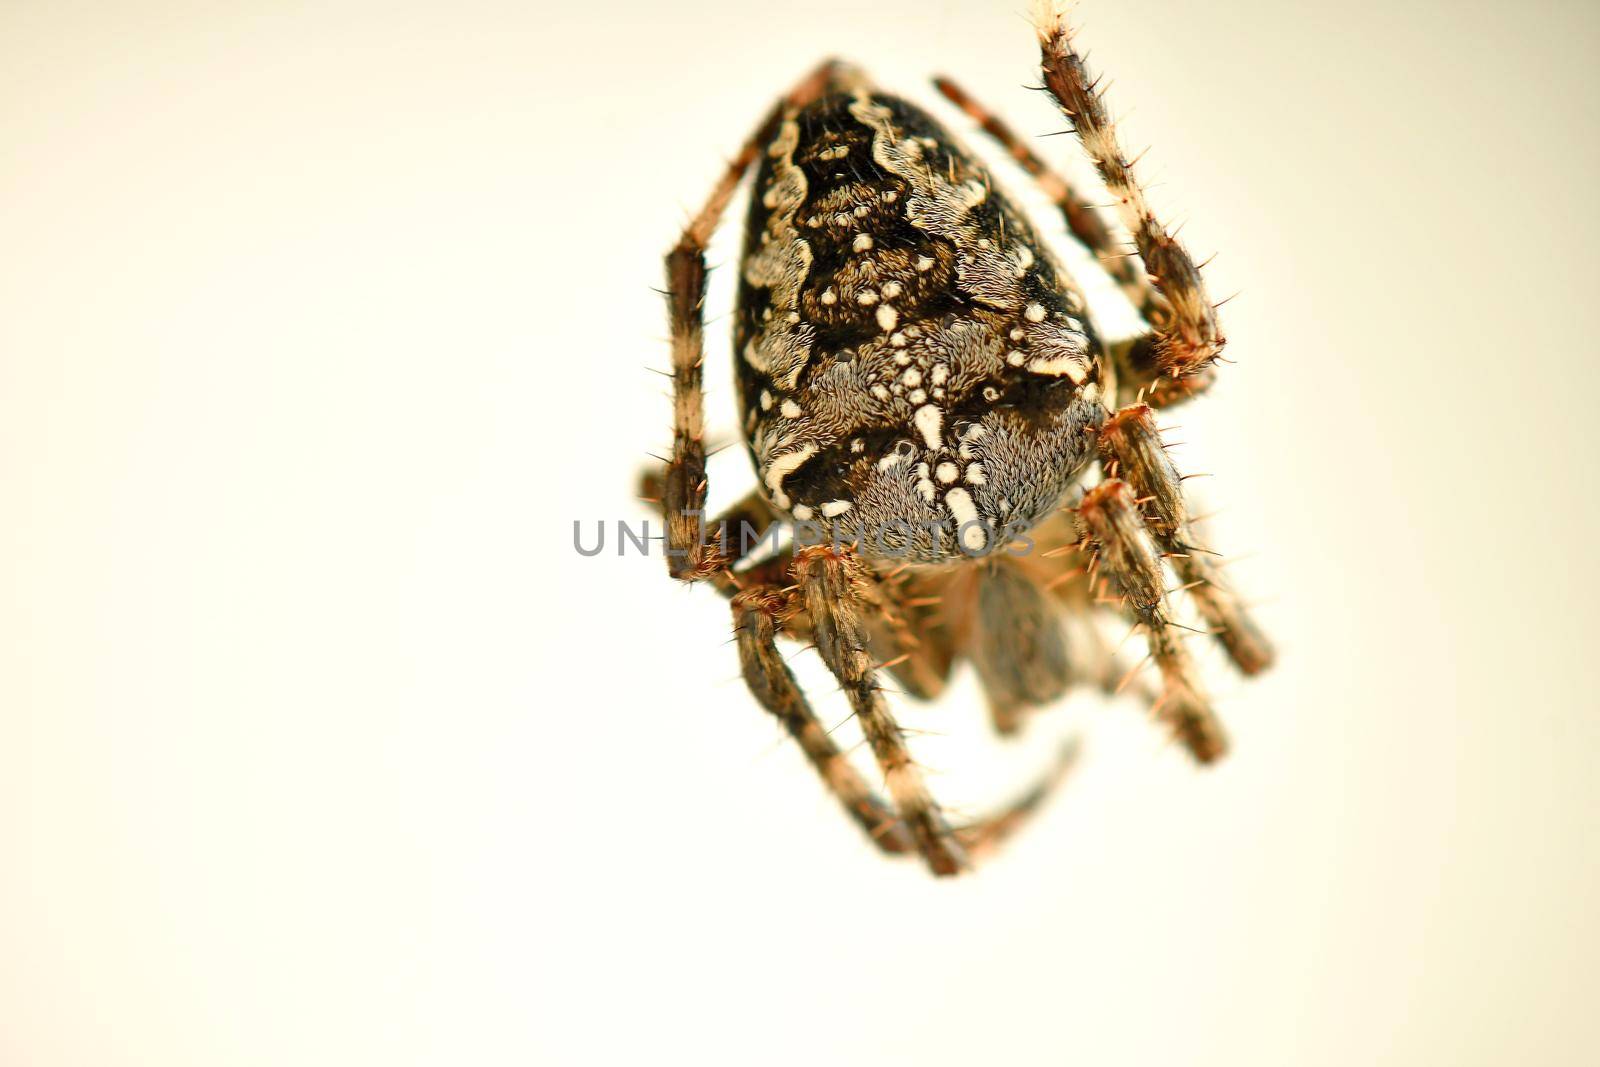 a garden spider in its web in a macro by Jochen